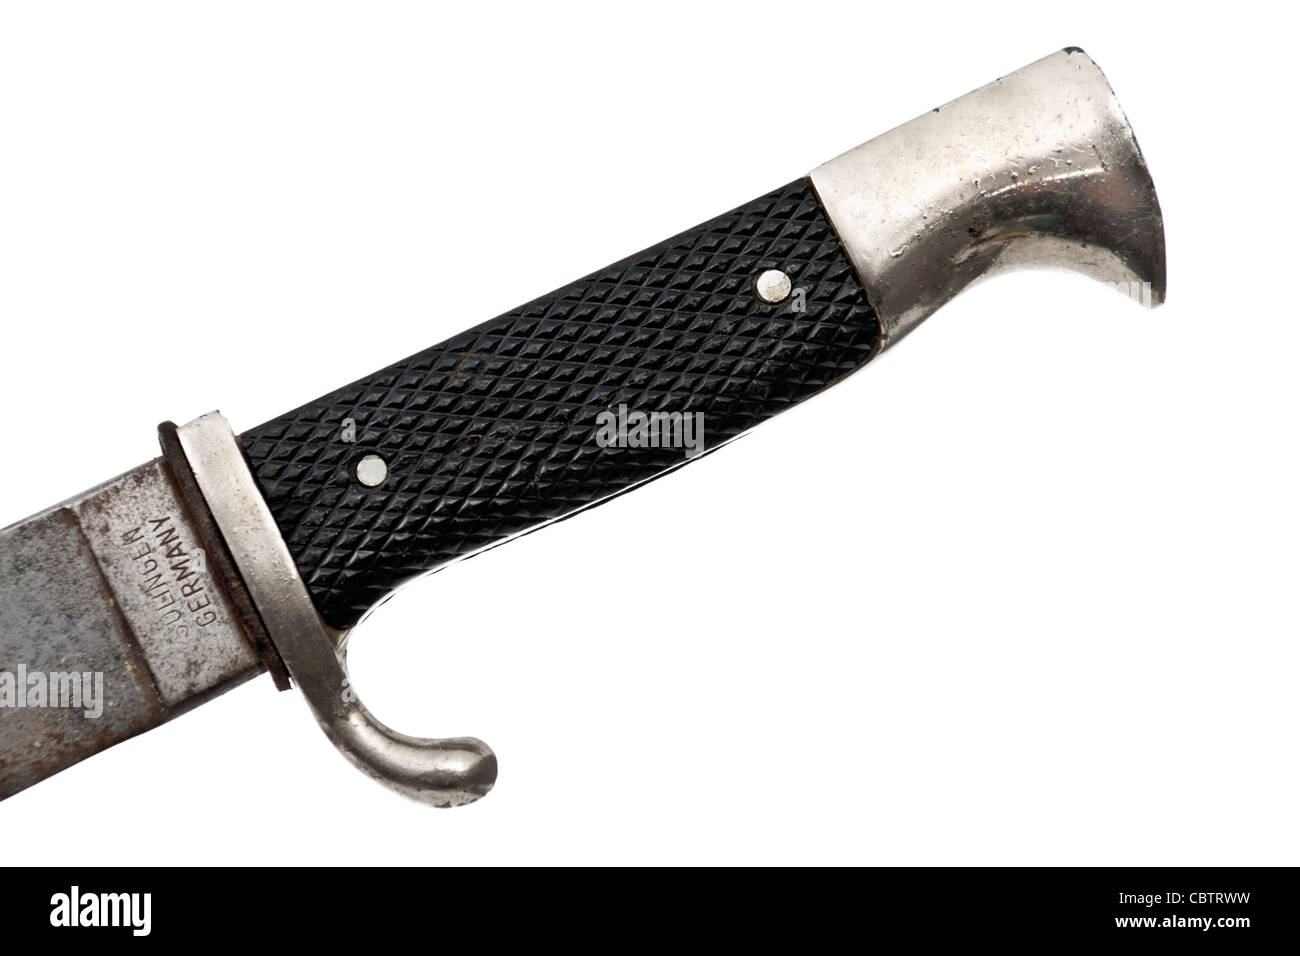 Solingen knife immagini e fotografie stock ad alta risoluzione - Alamy